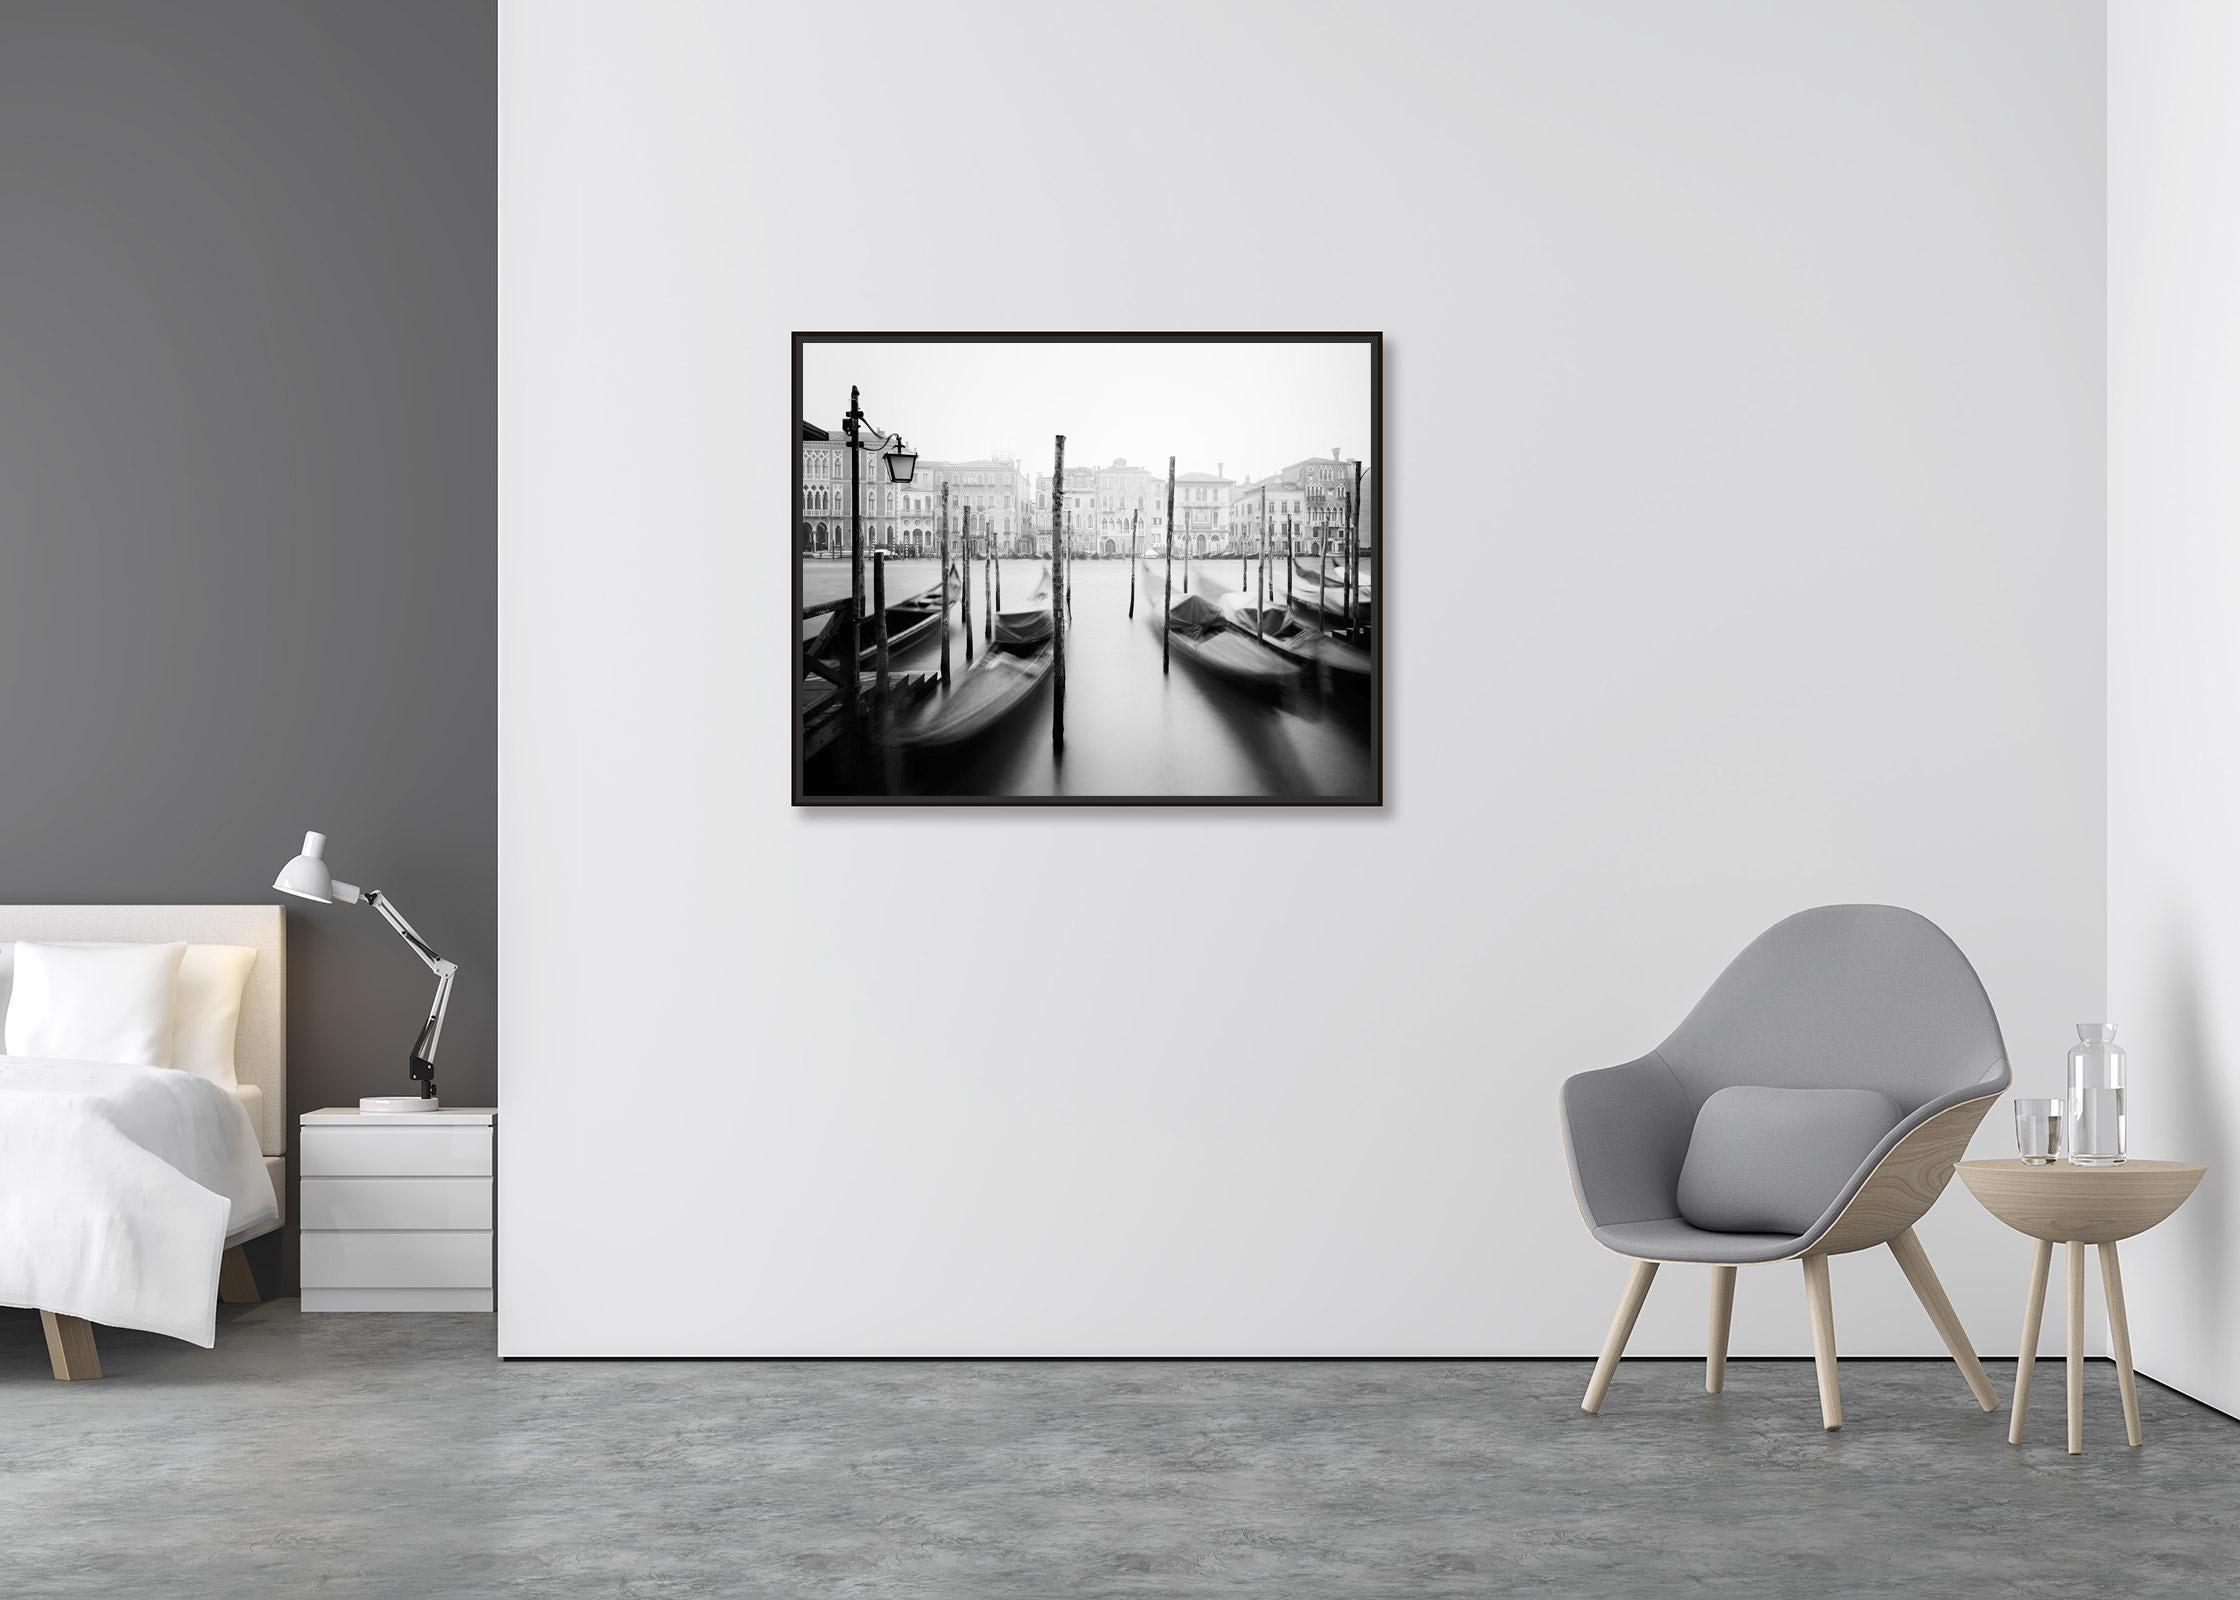 Gondola, Canal Grande, Venedig, Schwarz-Weiß-Fotografie von Stadtansichten der bildenden Kunst (Zeitgenössisch), Photograph, von Gerald Berghammer